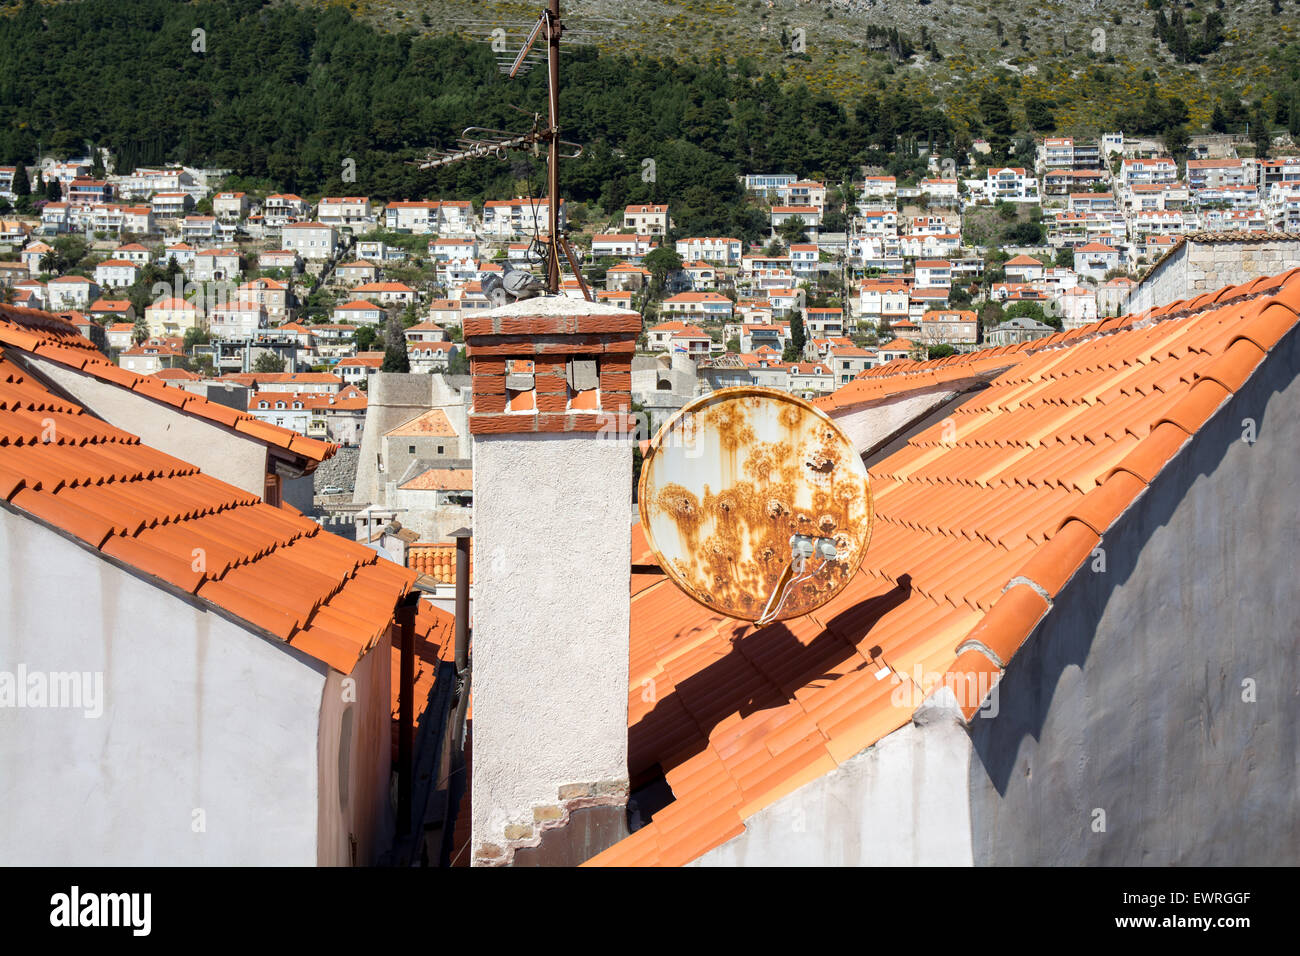 Scène sur le toit des bâtiments à l'intérieur de la vieille ville, Dubrovnik, Croatie Banque D'Images